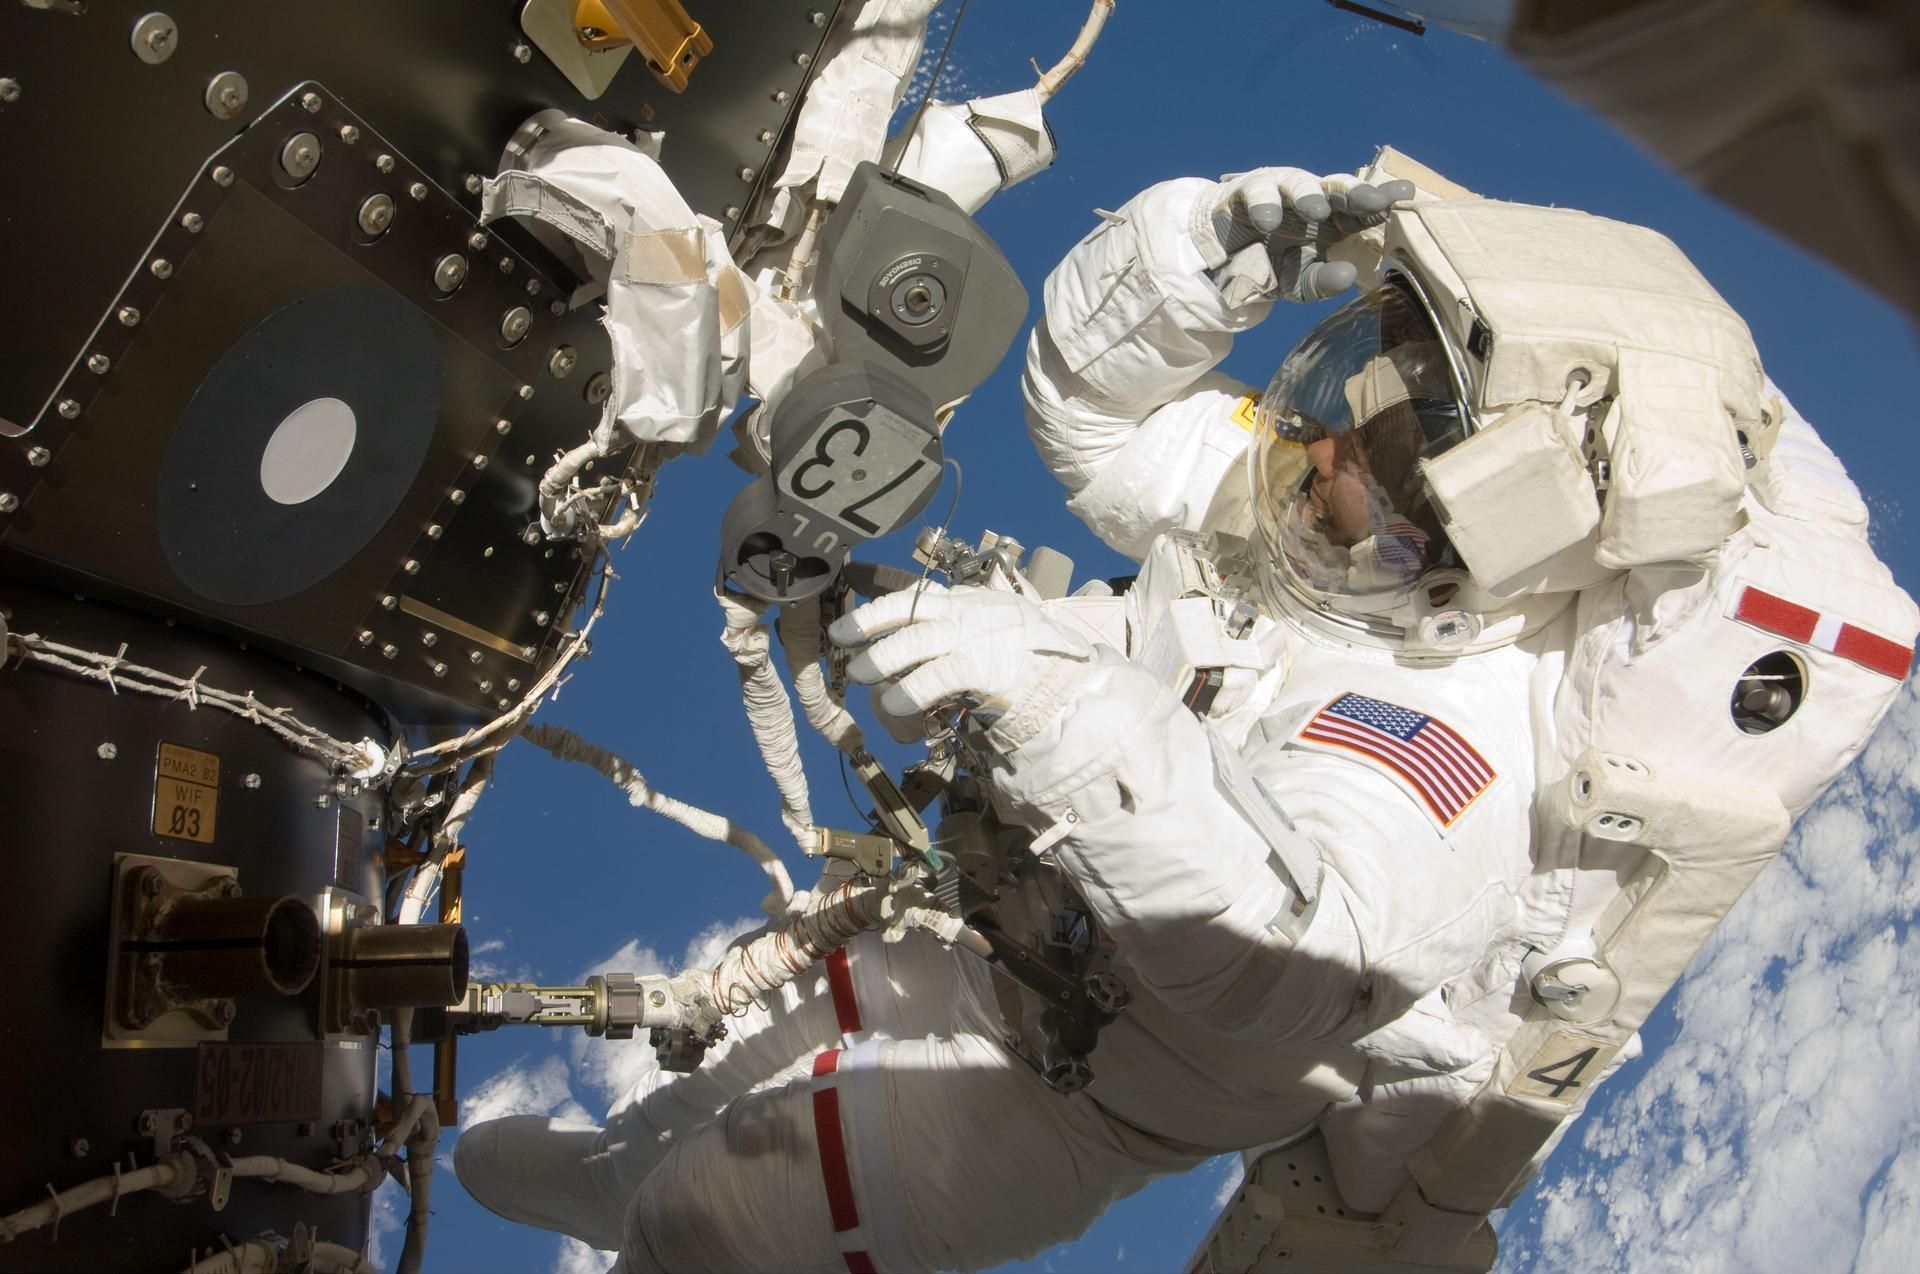 Проблеми на МКС: чому відклали вихід астронавтів у відкритий космос - Новини технологій - Техно